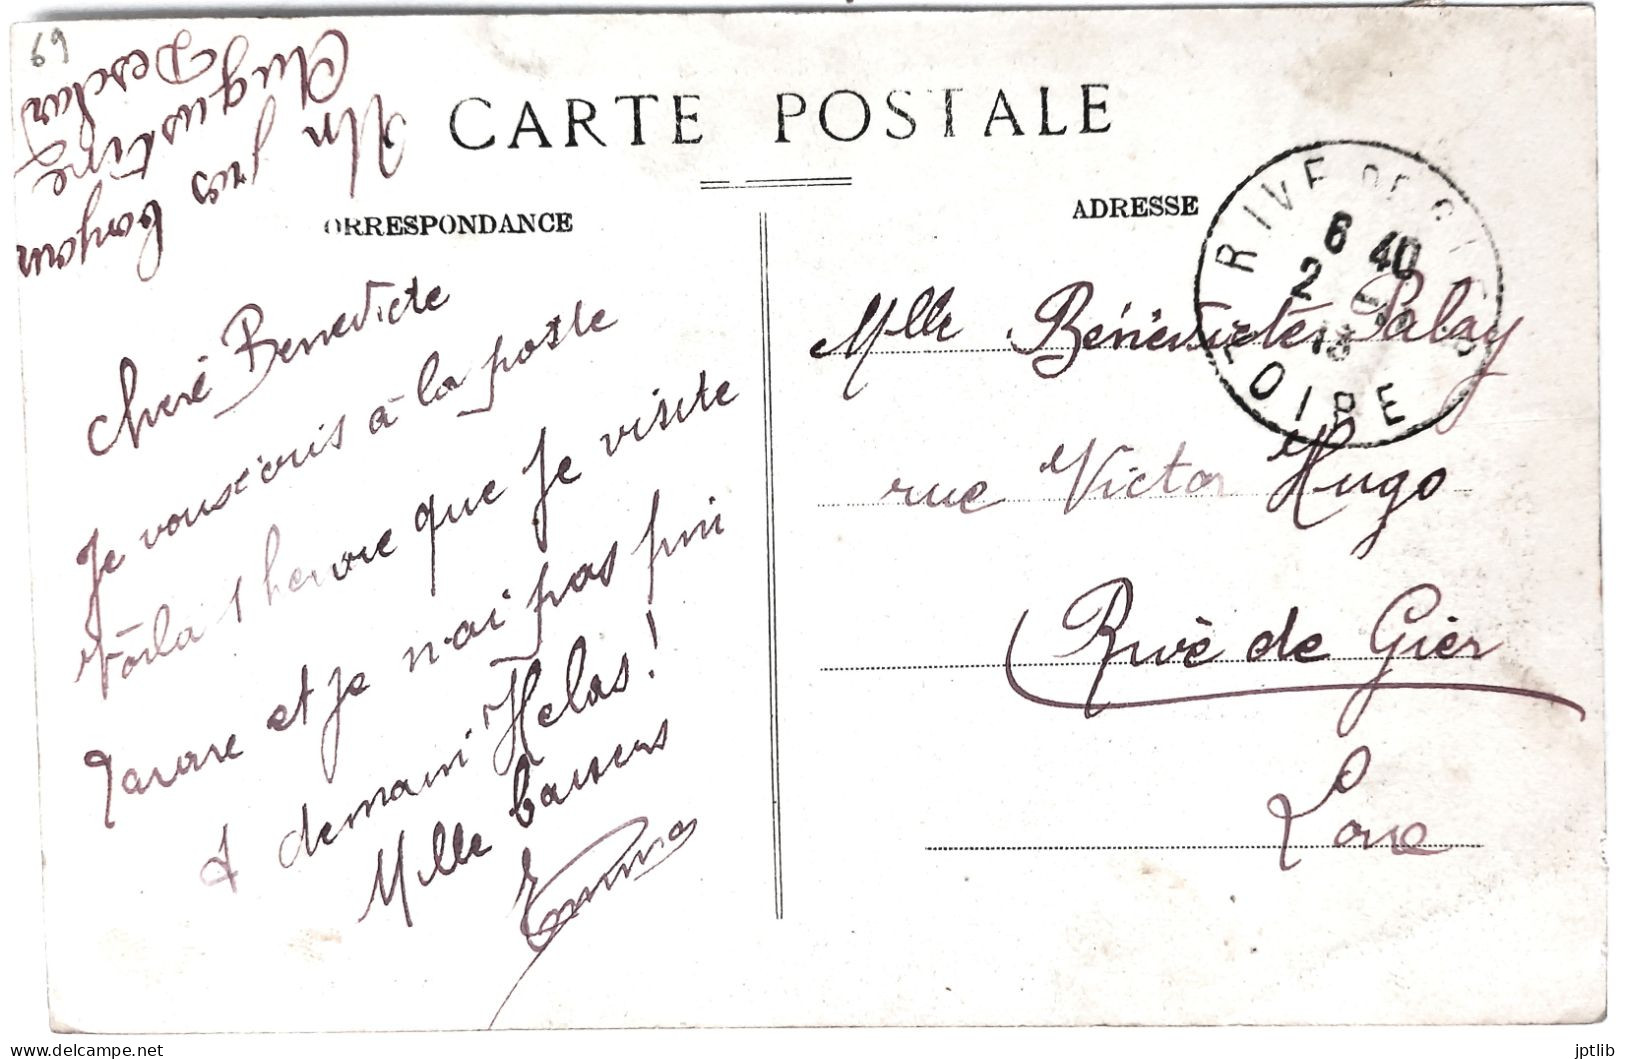 CPA Carte Postale / 69 Rhône, Tarare / A. Déal Et Cie, Imp.-édit. / Place Denave - Statue De Simonet - Le Théâtre. - Tarare